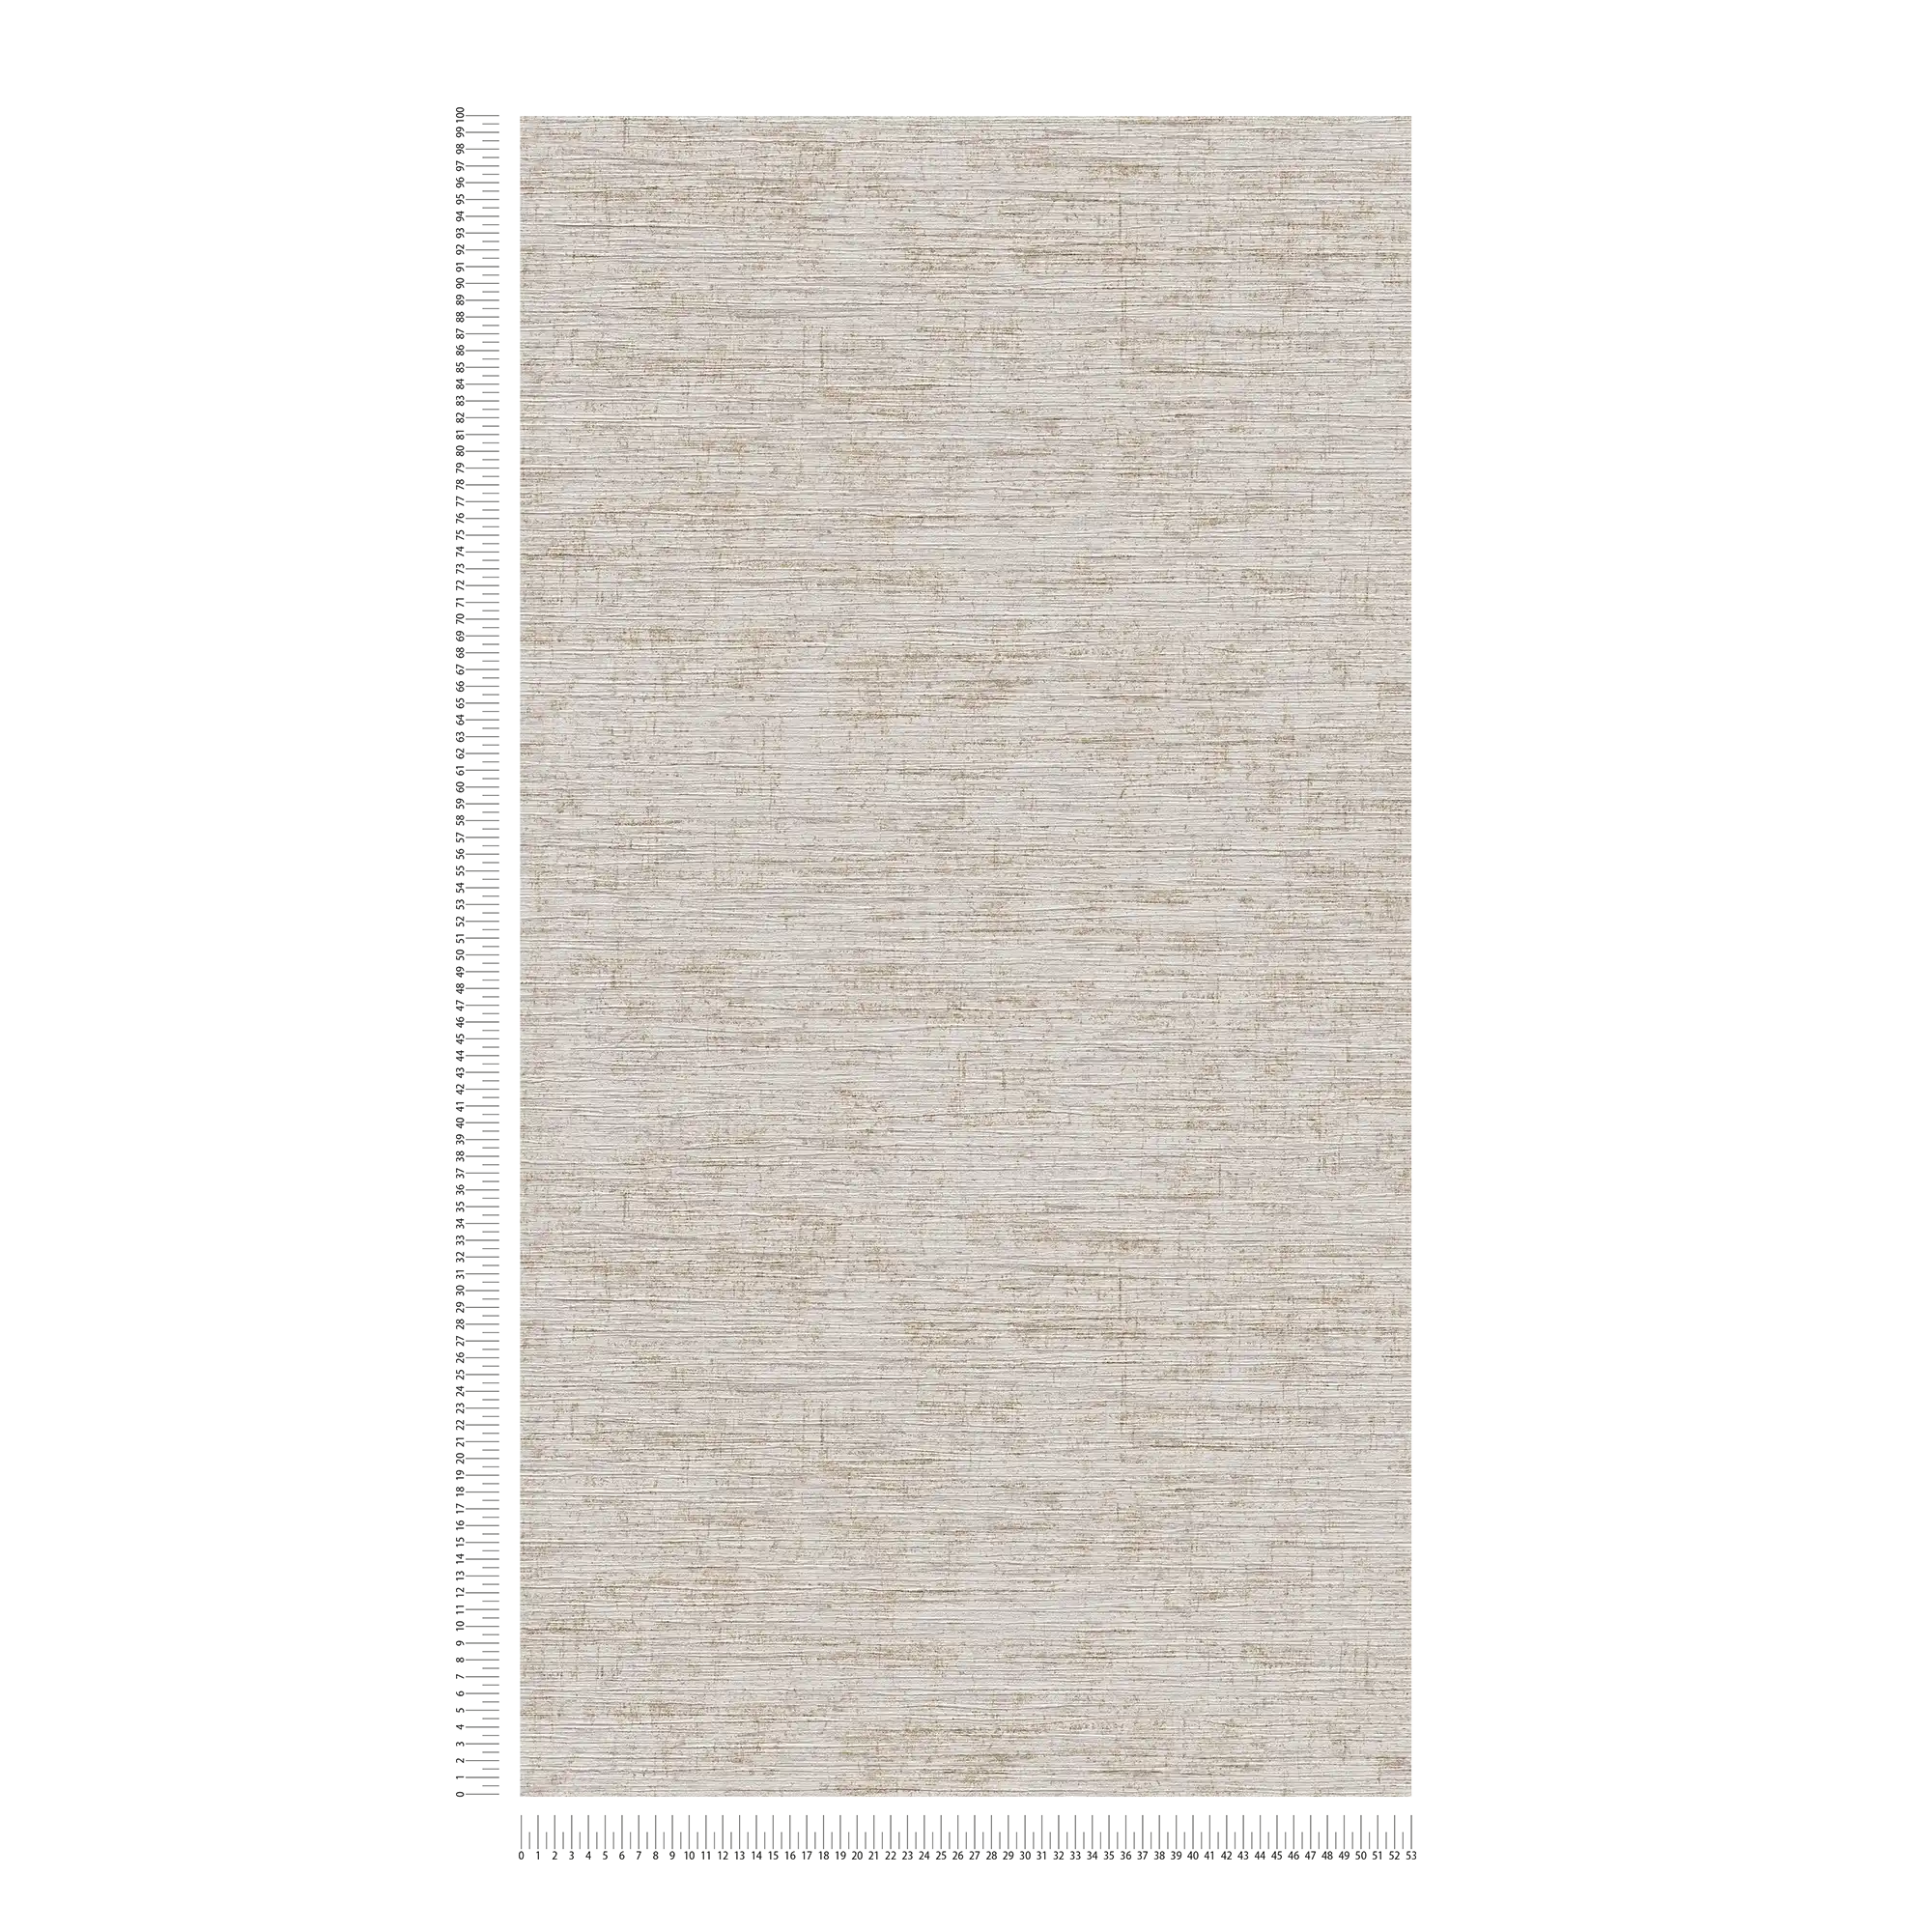             Melierte Tapete mit textilem Prägemuster – Beige, Grau, Metallic
        